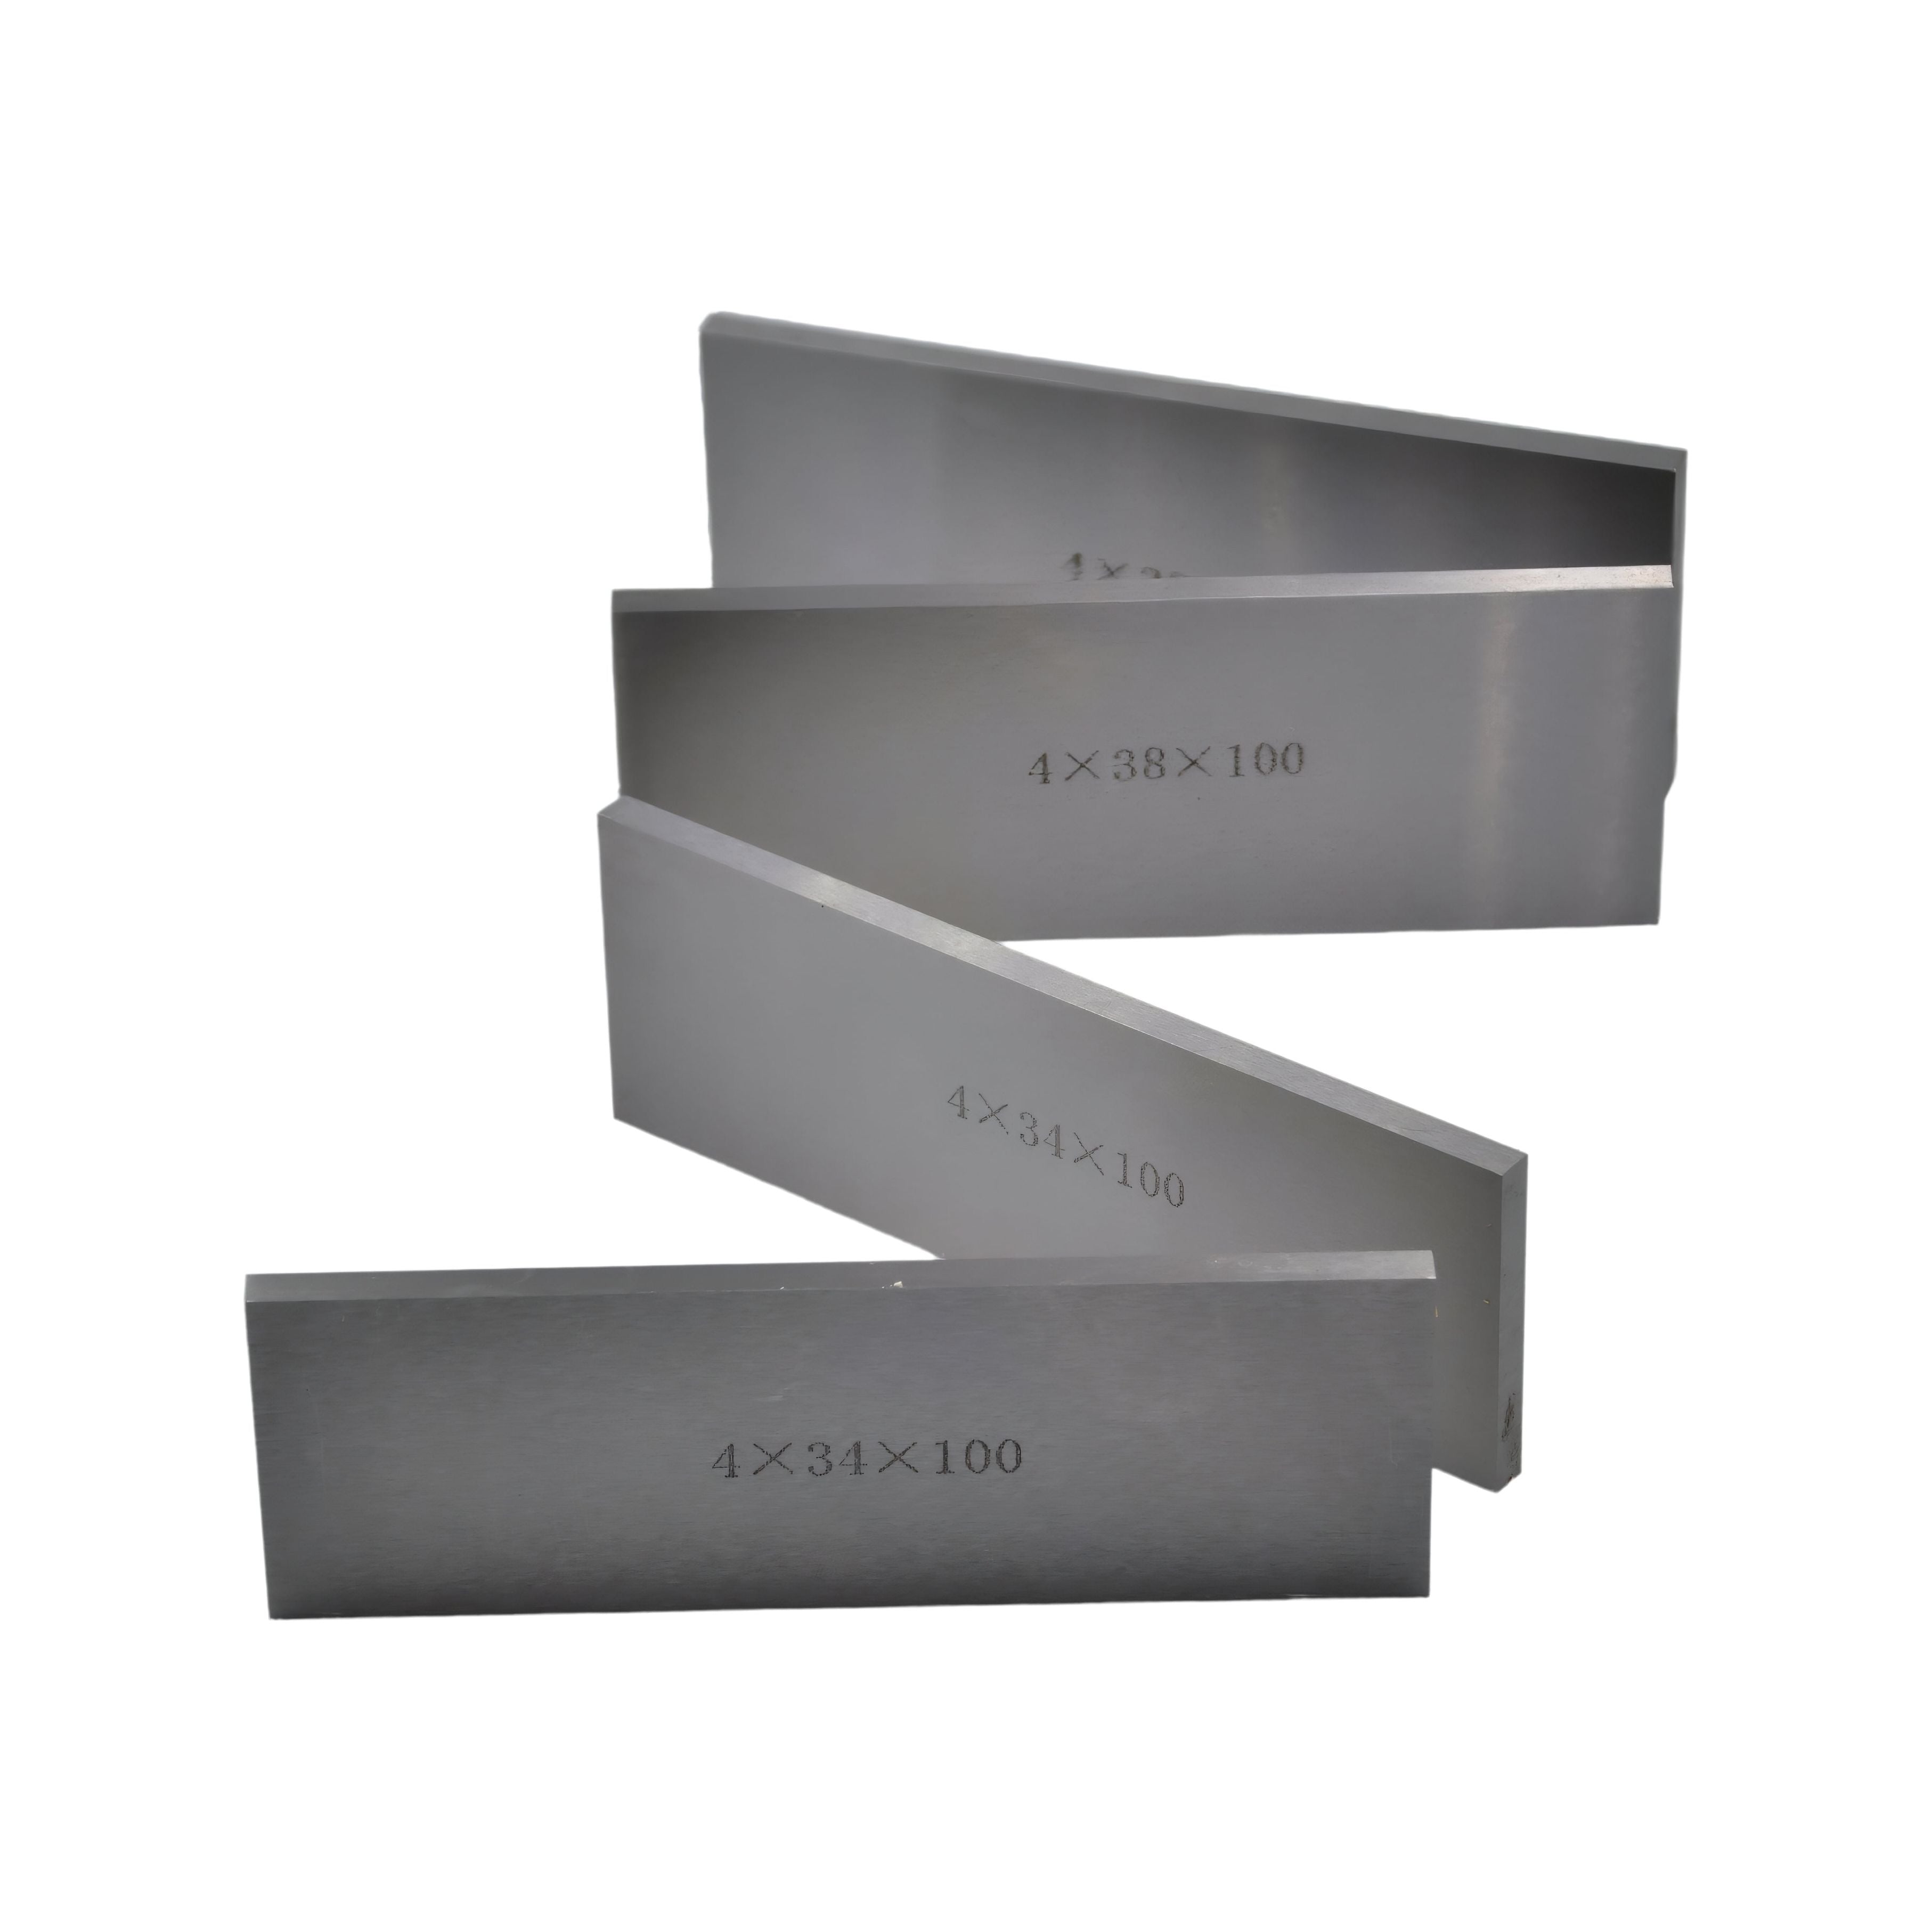 9 Pairs Parallel Steel Gauge Block Set Ground Steel 18 plates 100 mm Long